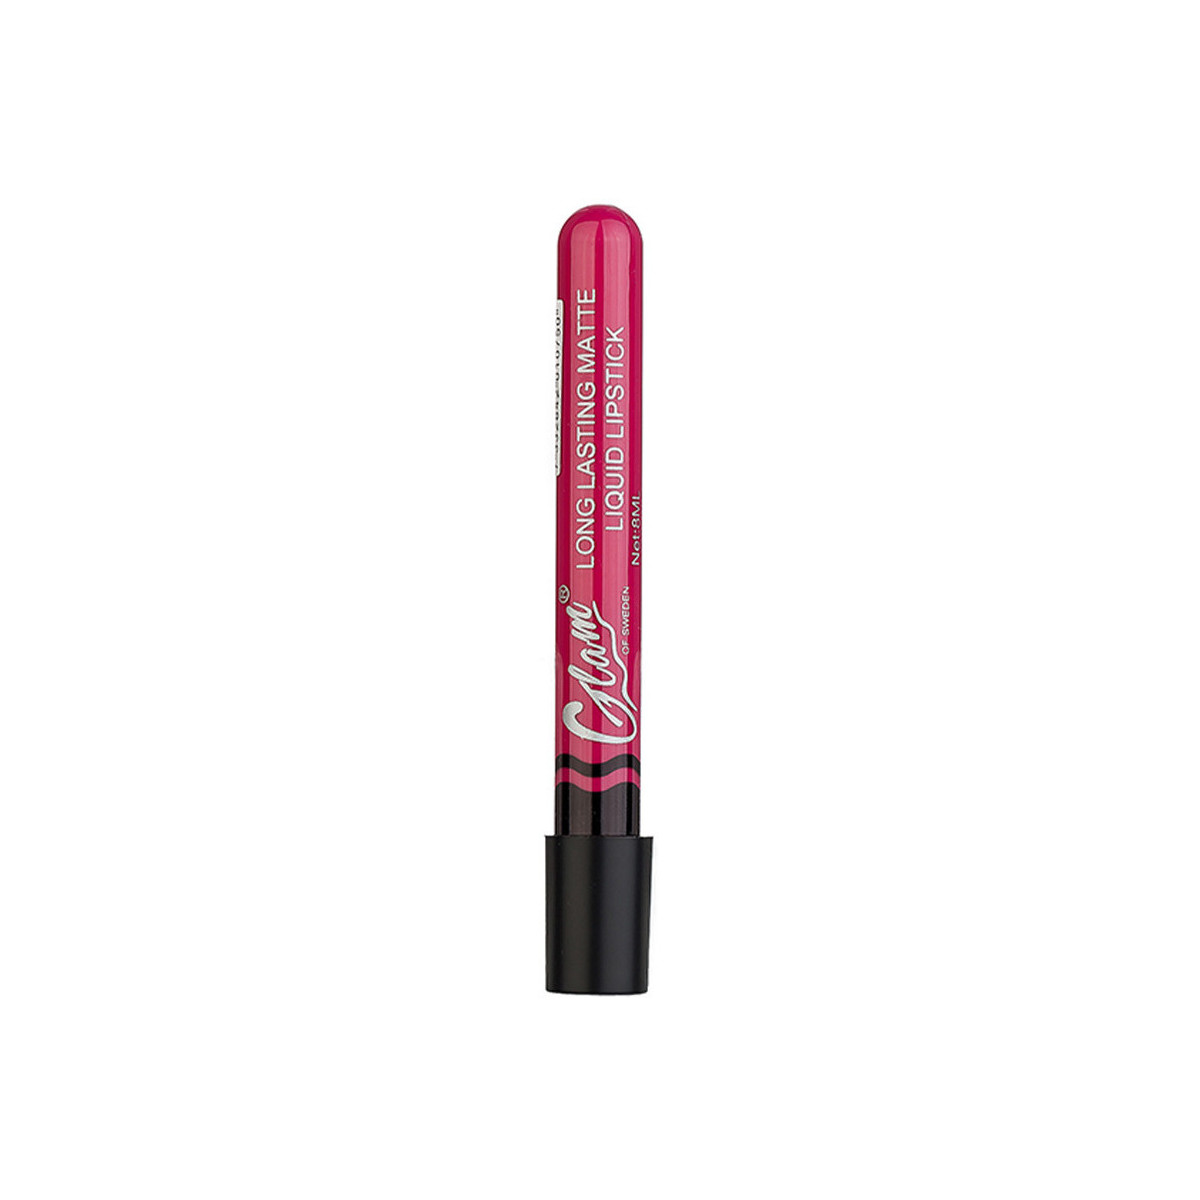 Bellezza Donna Rossetti Glam Of Sweden Matte Liquid Lipstick 04-happy 